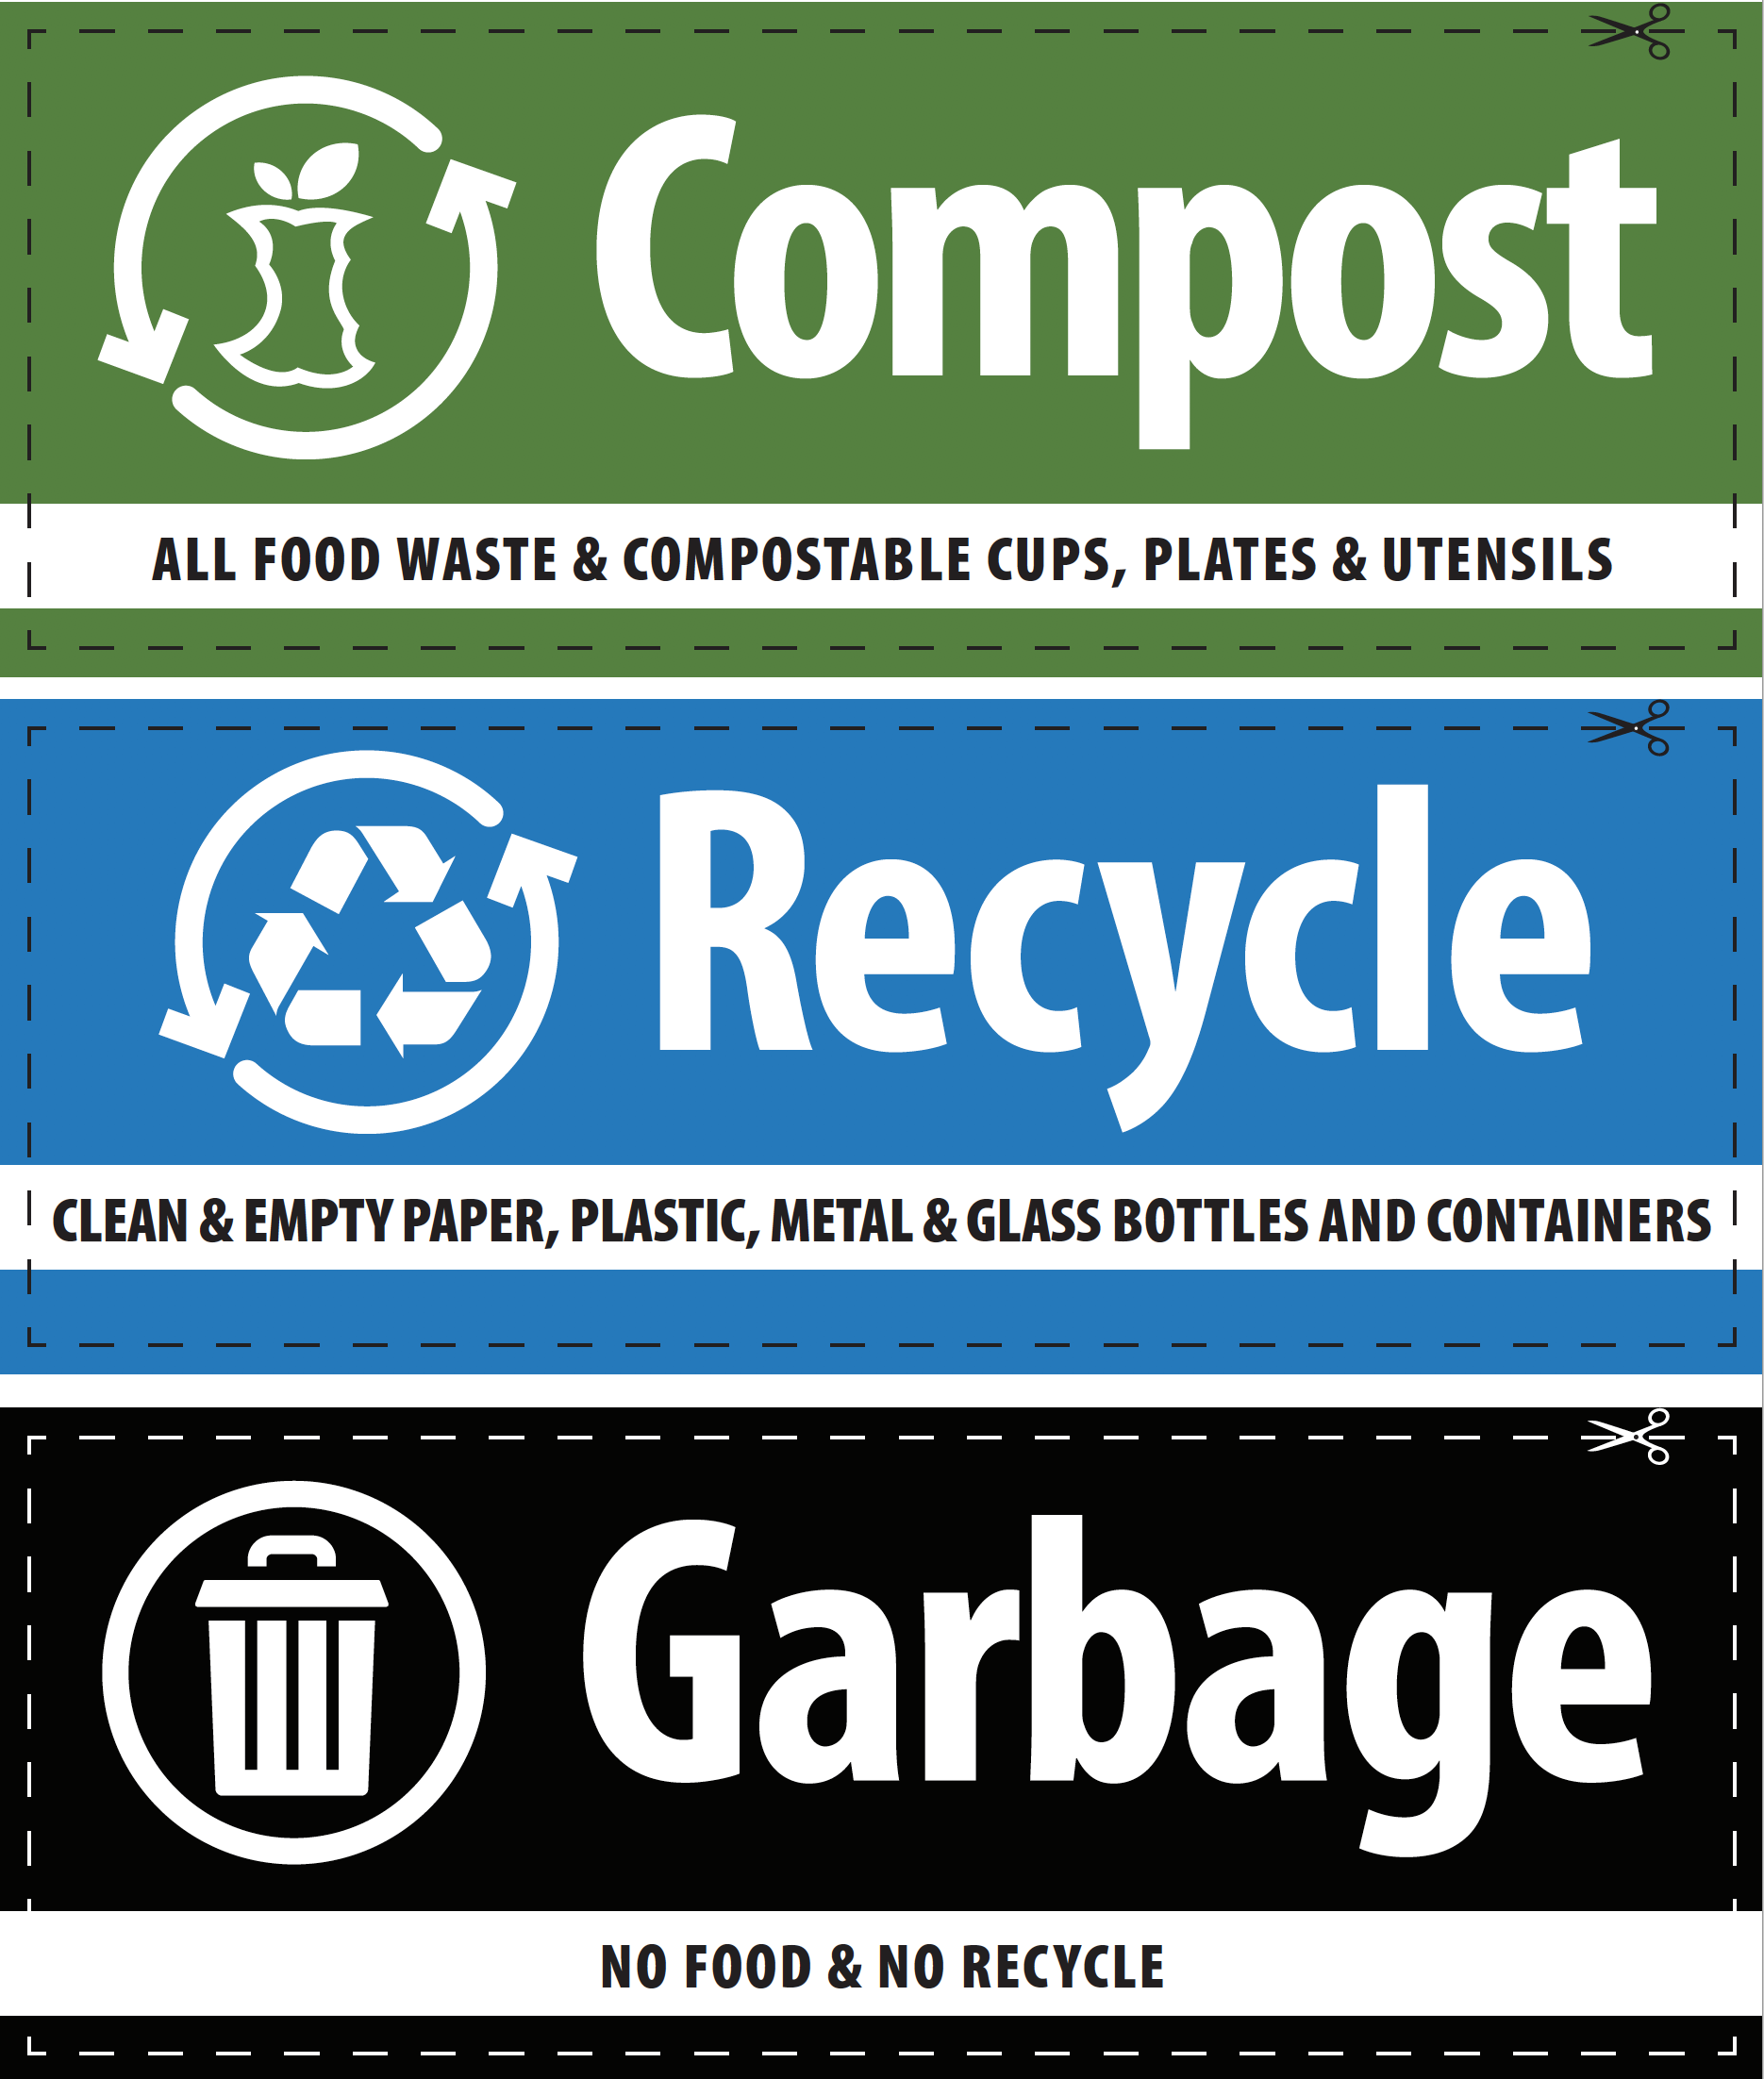 Waste Labels